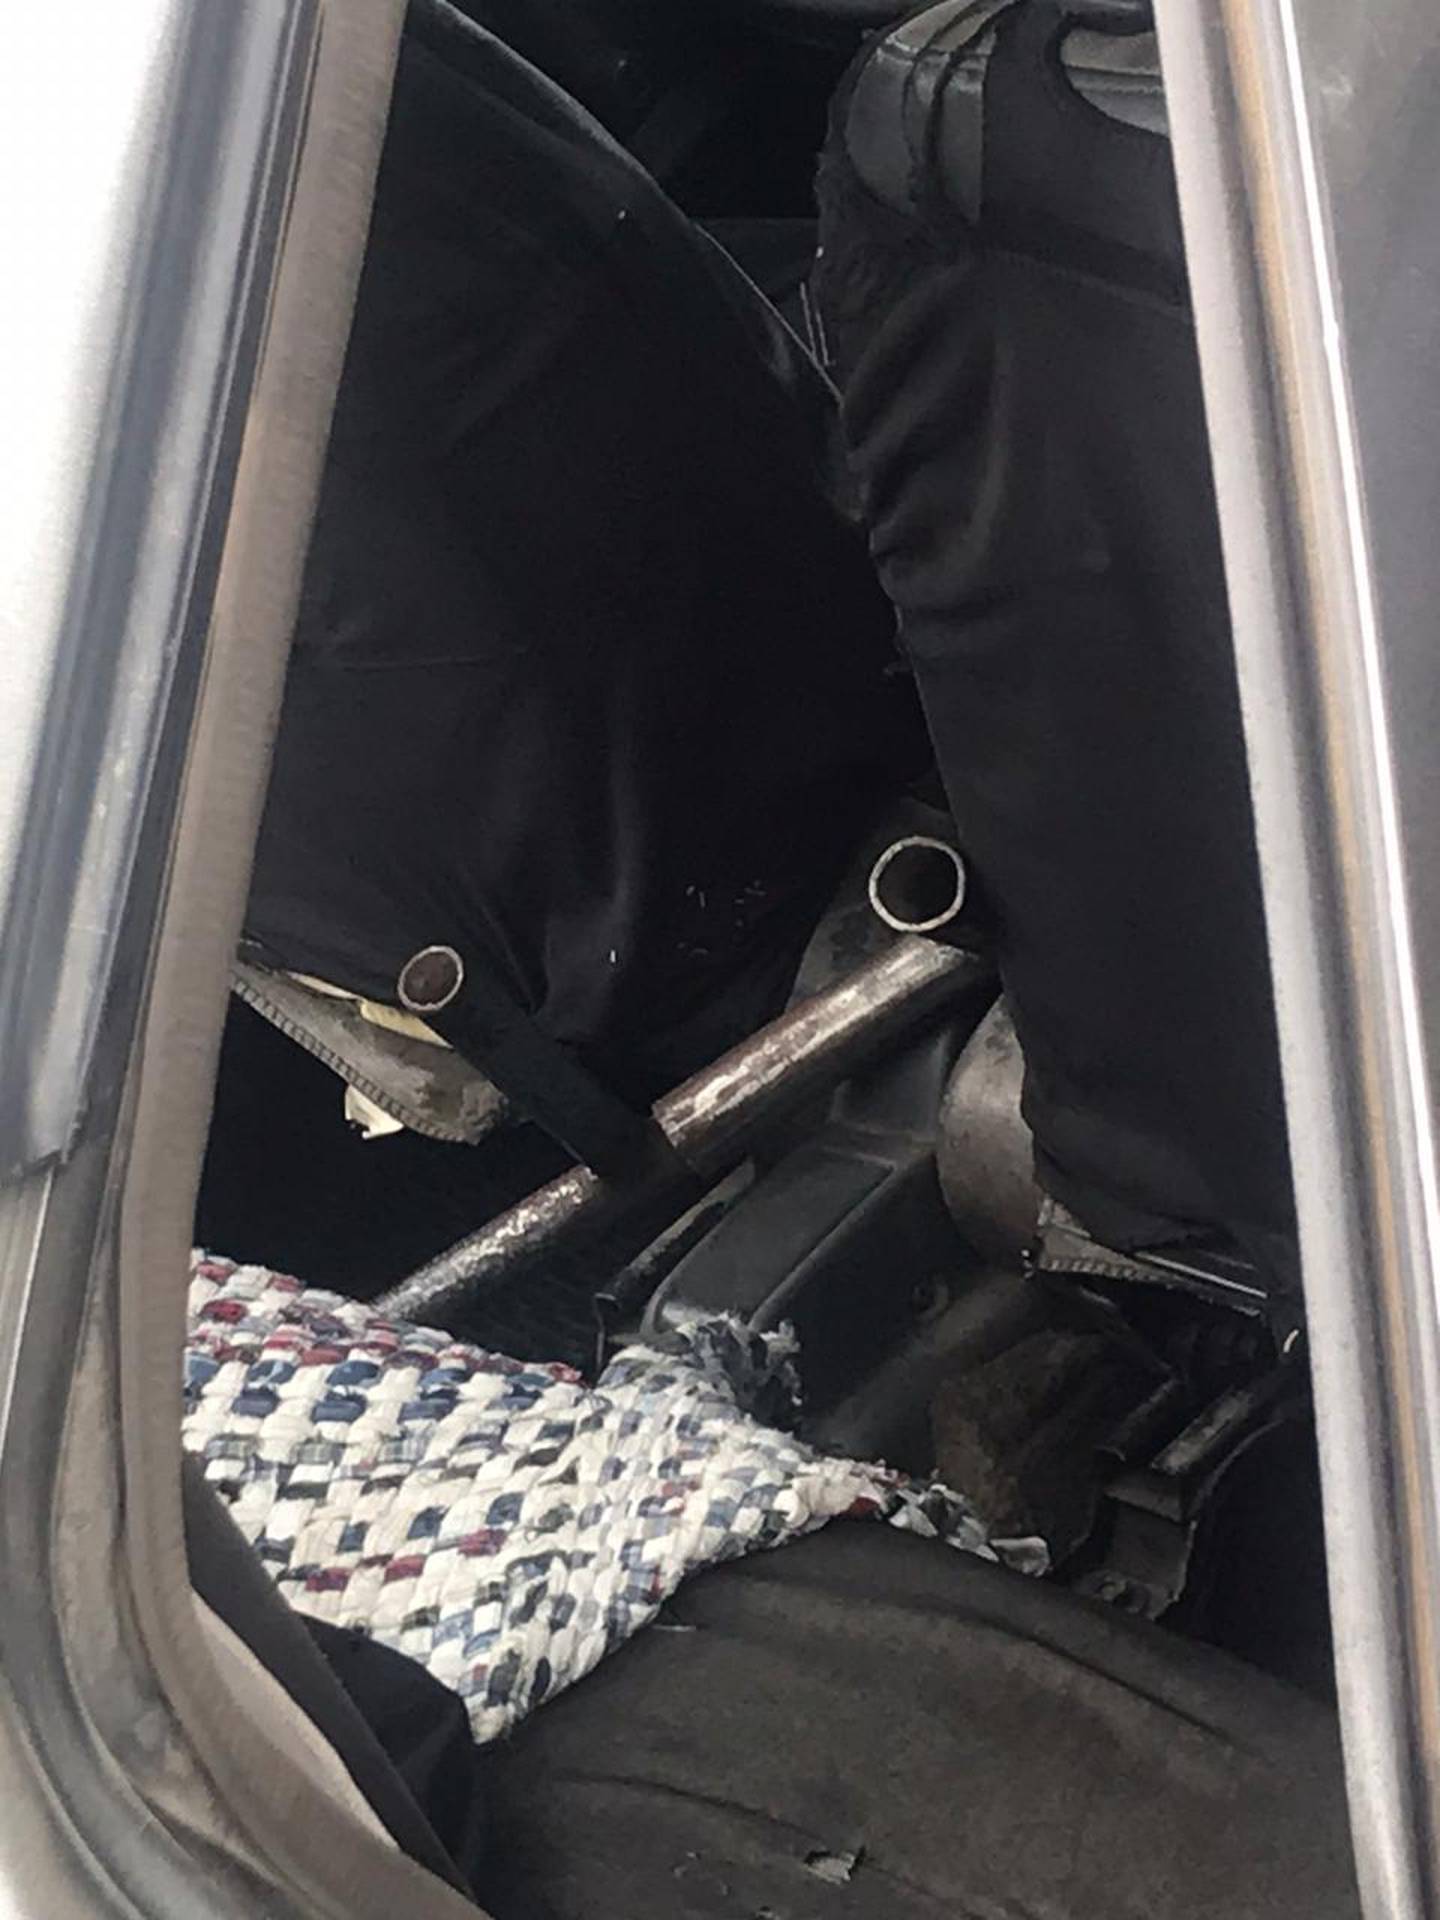 Una escopeta hechiza, un revólver y botellas de licor robadas del minisúper fueron halladas por la Policía en el Nissan detenido frente a la Metalco de Orotina, cuando los sospechosos iban en fuga. Foto: Andrés Garita.